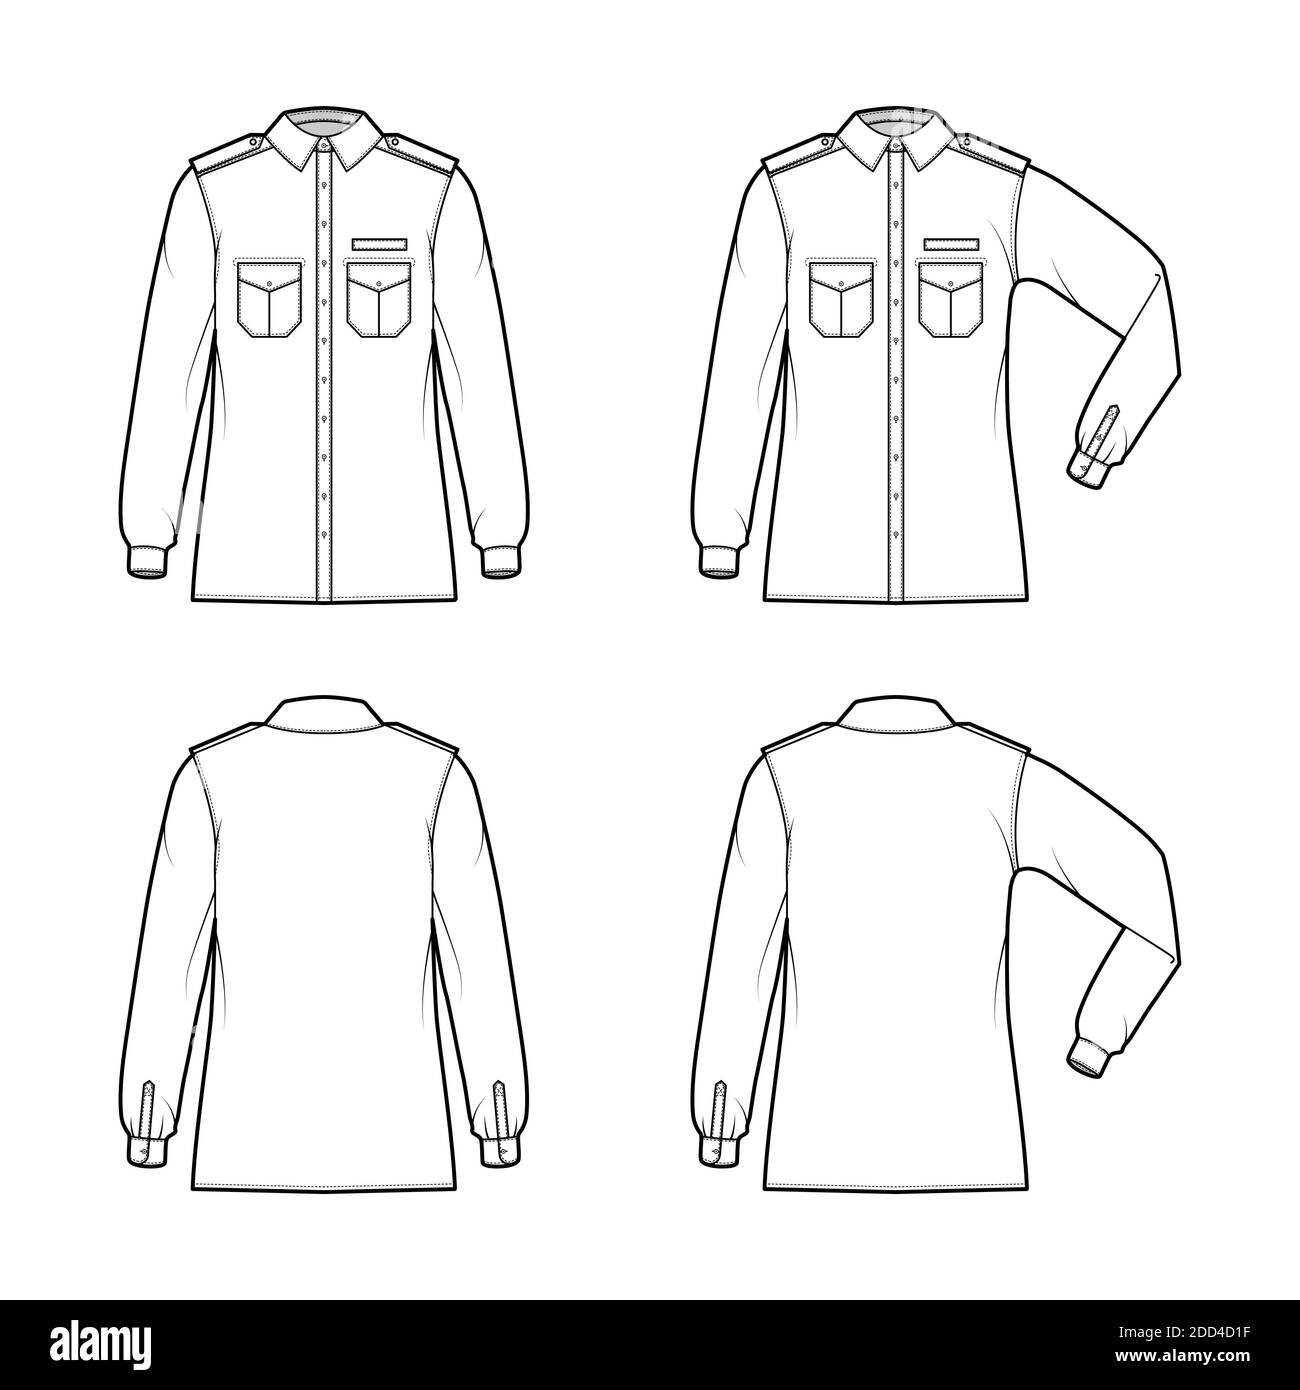 Camiseta Militar De Manga Corta Para Hombre Stock de ilustración -  Ilustración de equipo, neatness: 220206316